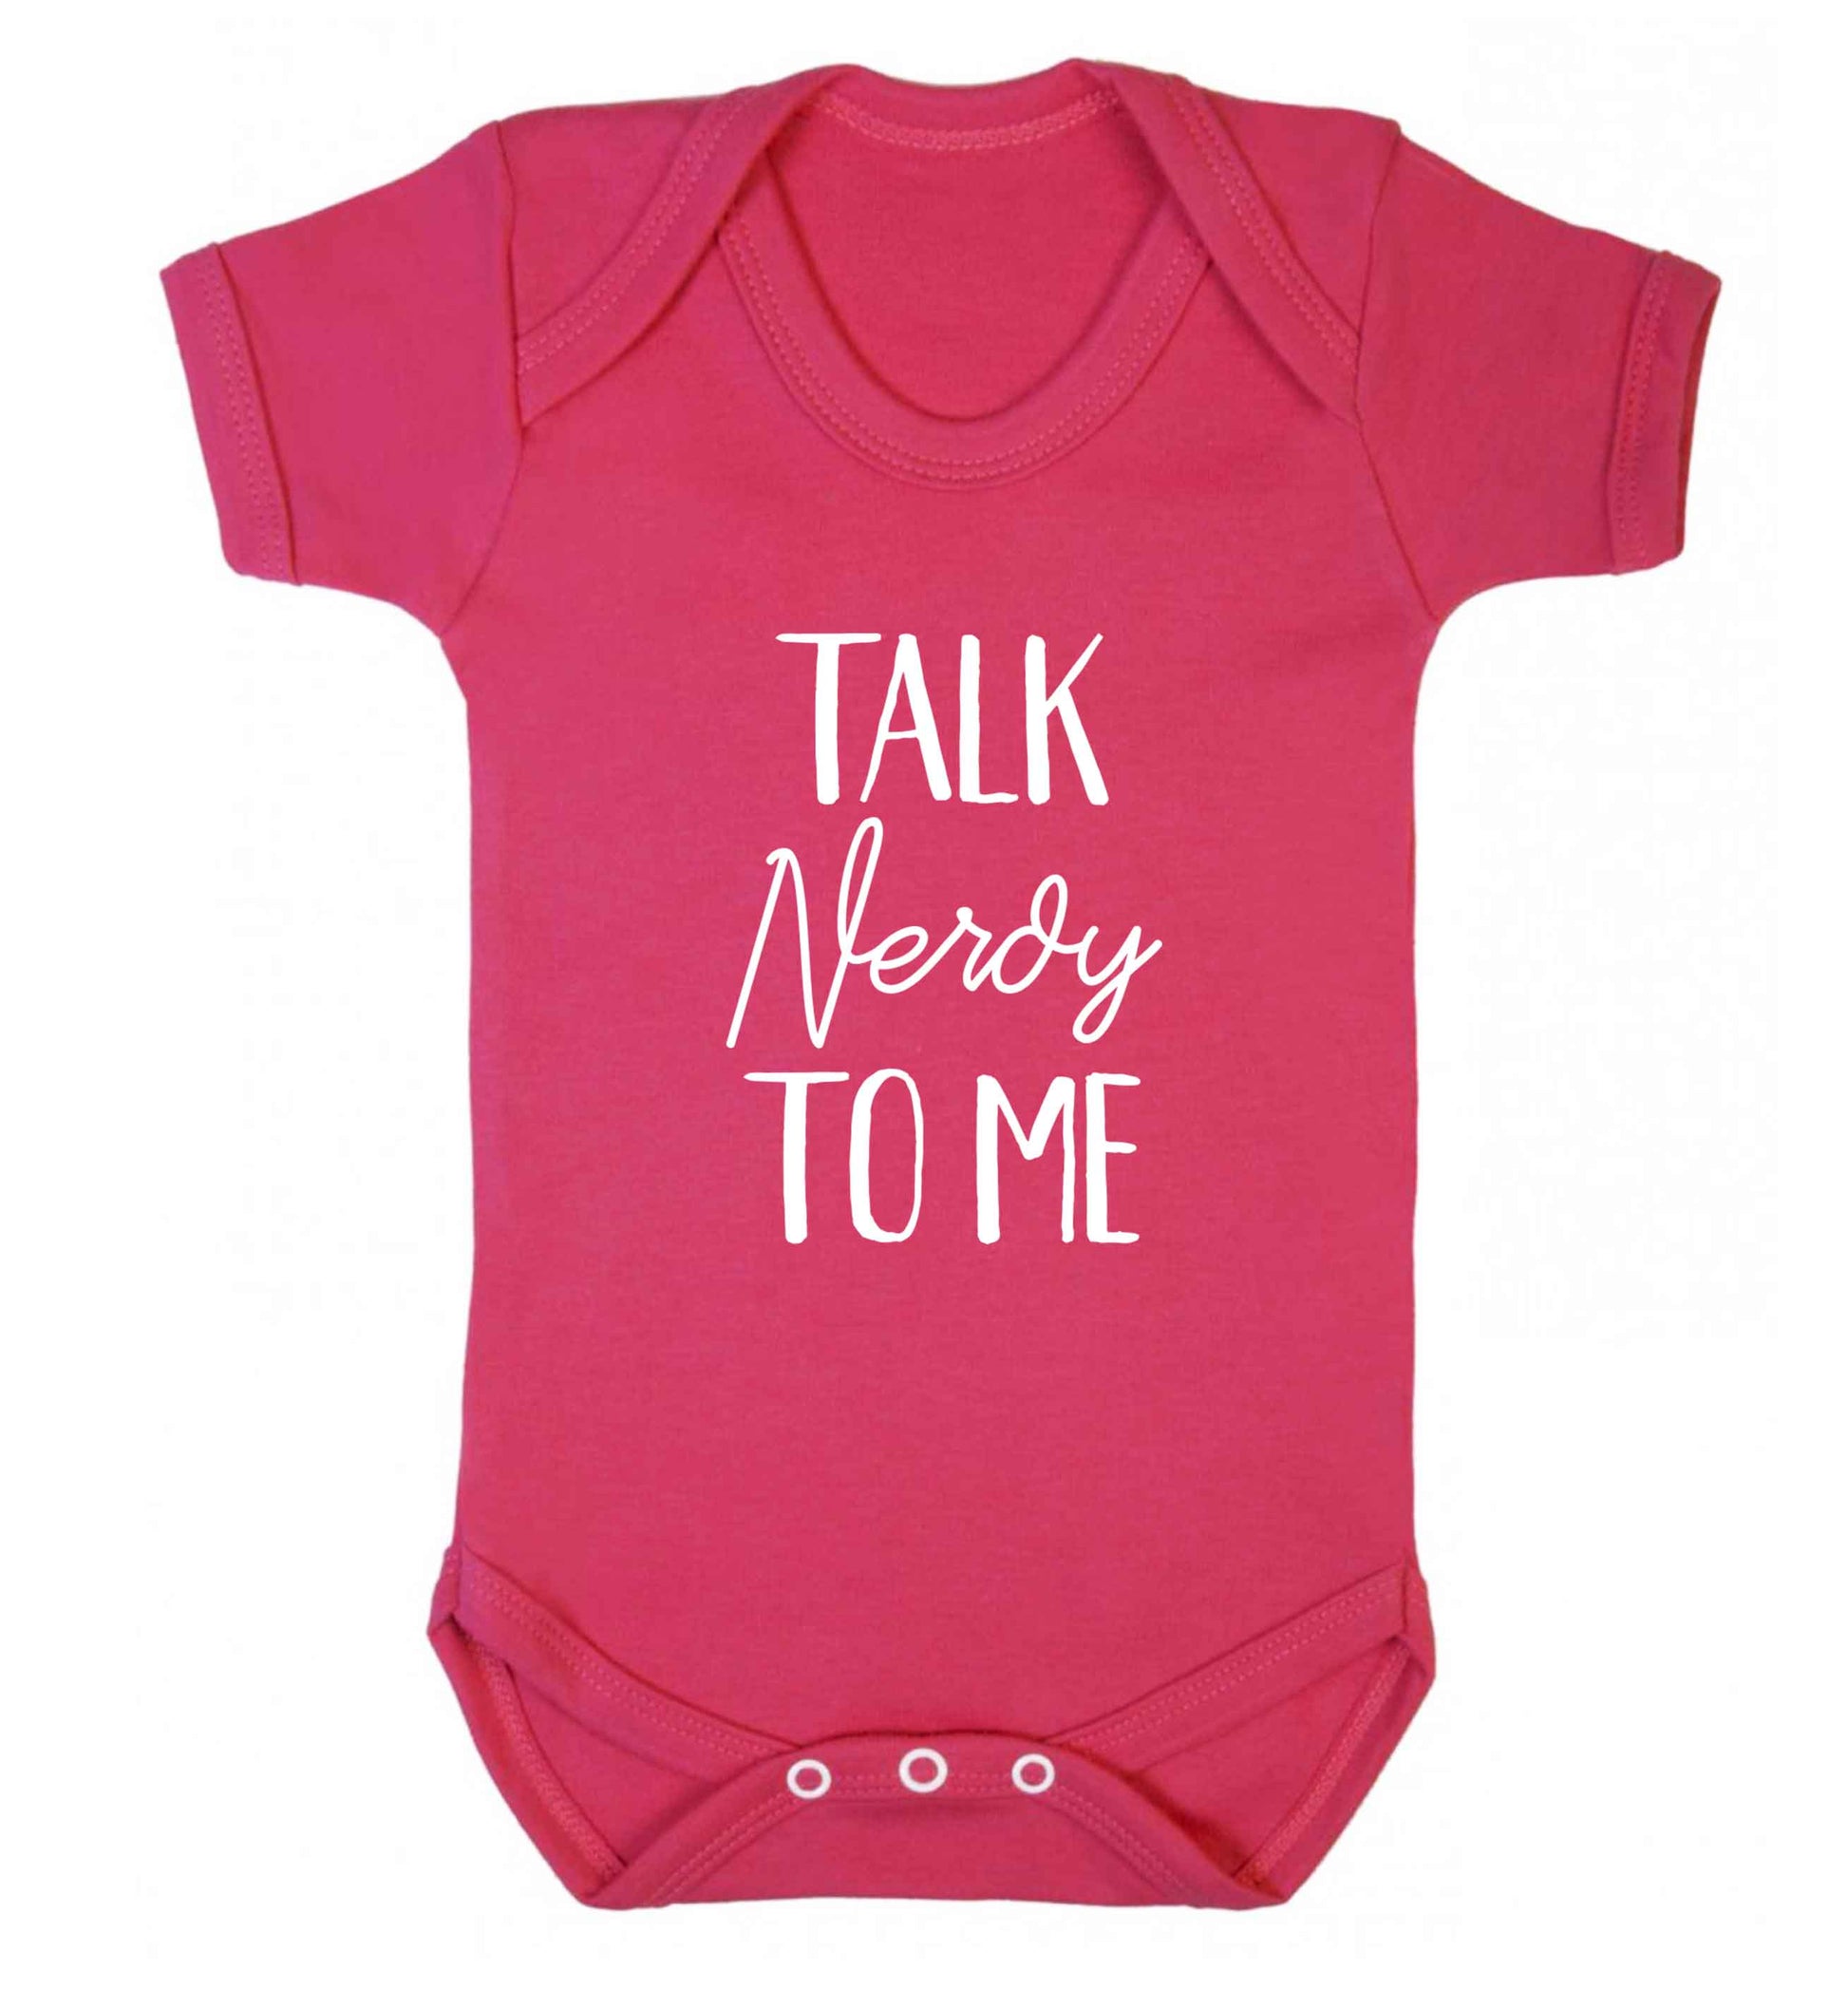 Talk nerdy to me baby vest dark pink 18-24 months